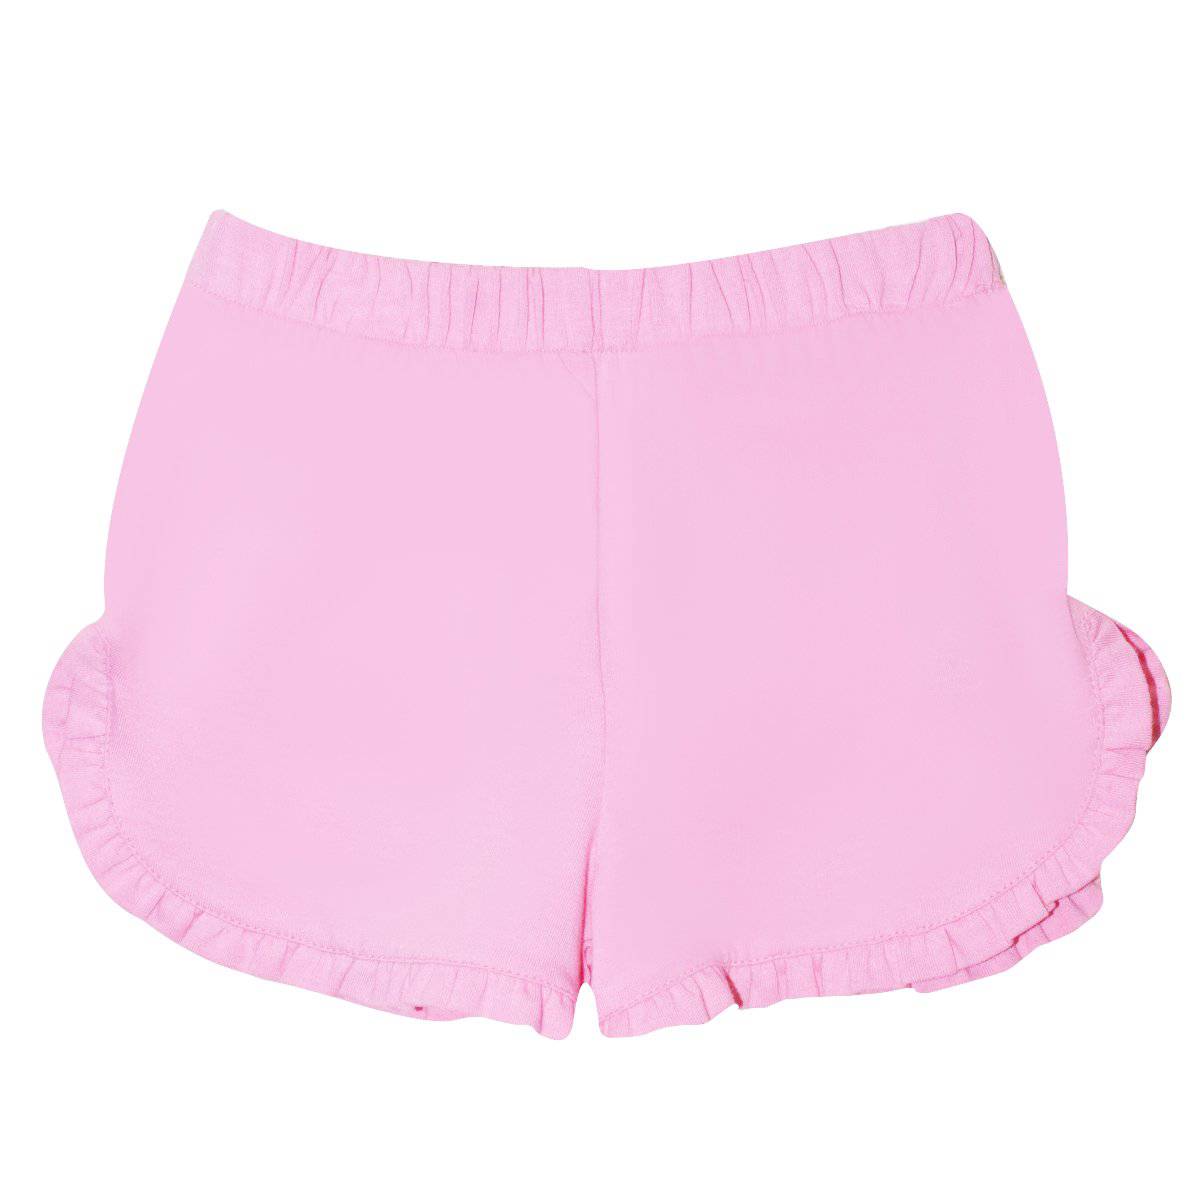 Vive La Fete - Vive La Fete Pink Knit Girls Ruffle Short - Little Miss Muffin Children & Home